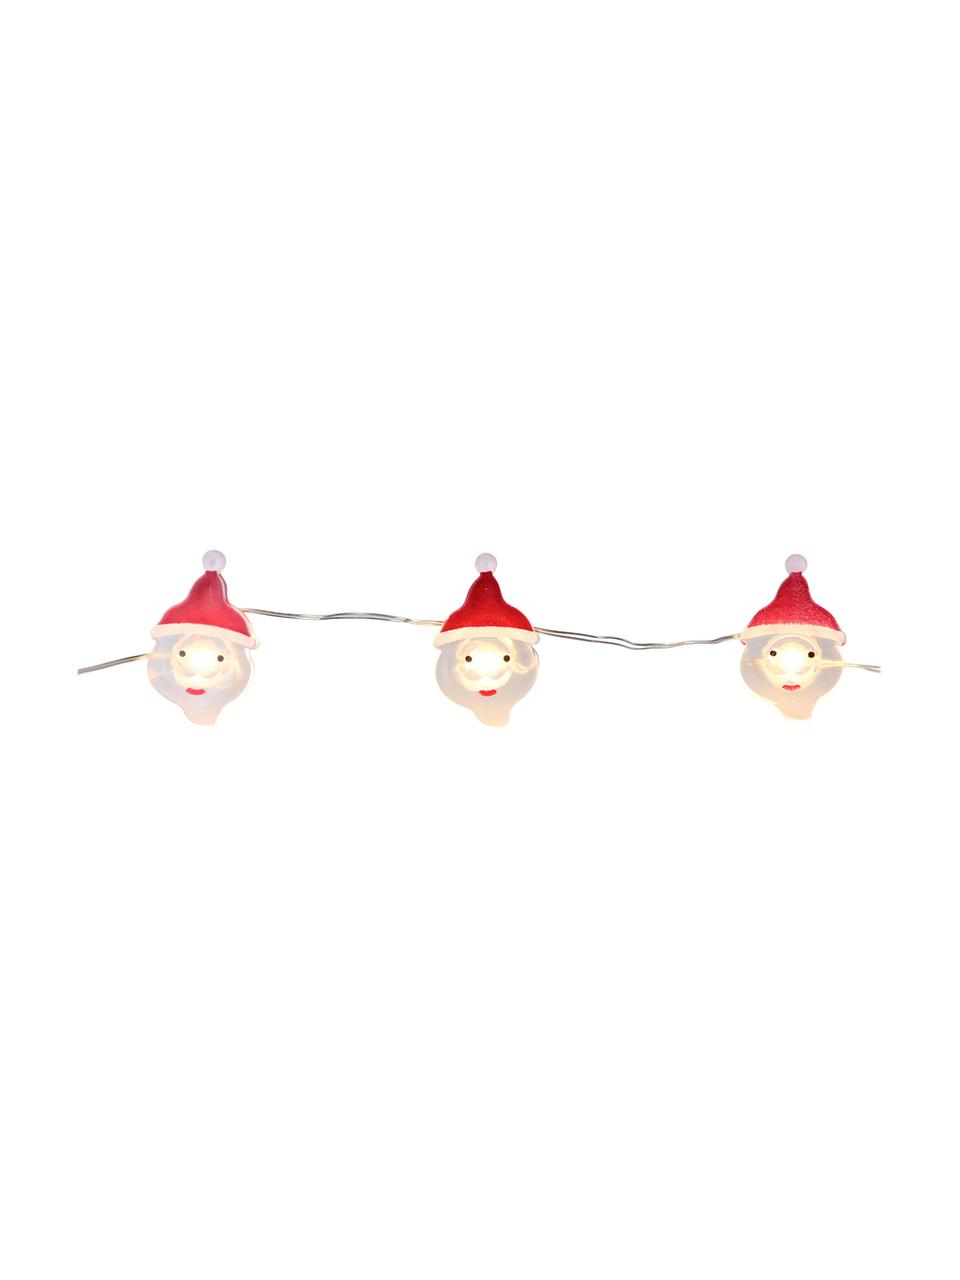 Světelný LED řetěz Santa Claus, Bílá, červená